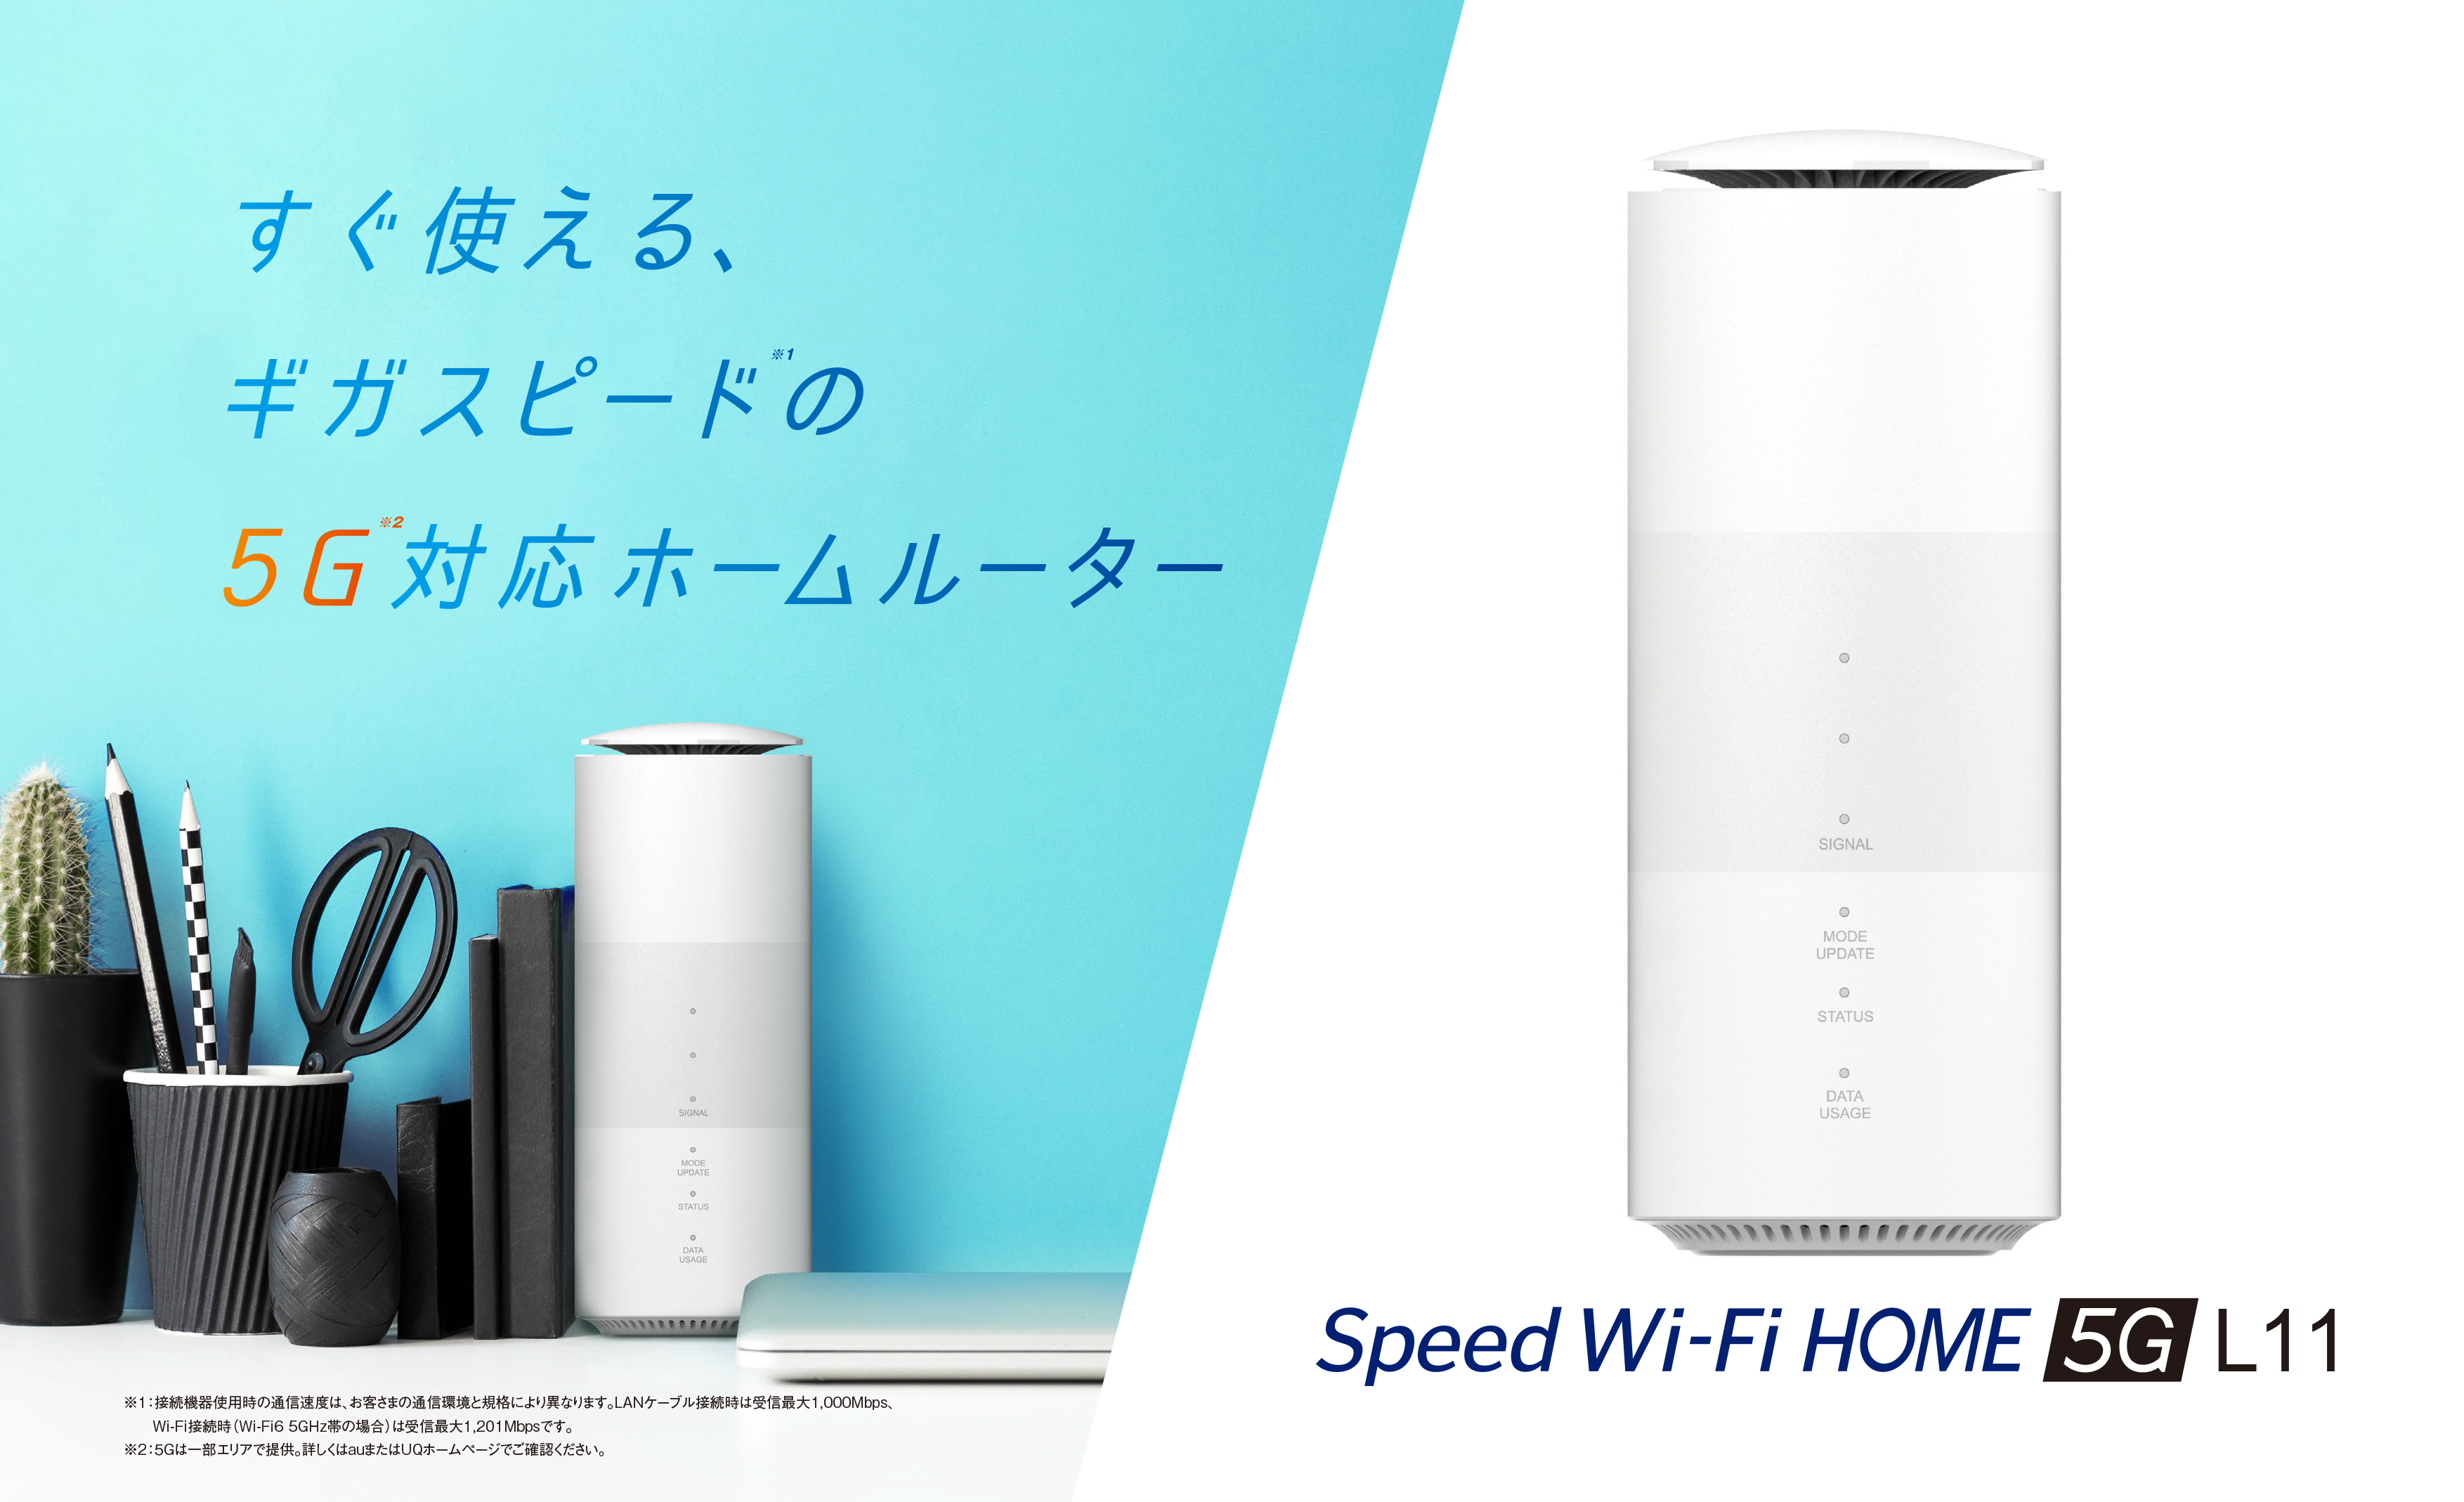 つやあり 【新品】WiMAX Speed Wi-Fi HOME 5G L11 ZTR01SWU - モバイル ...